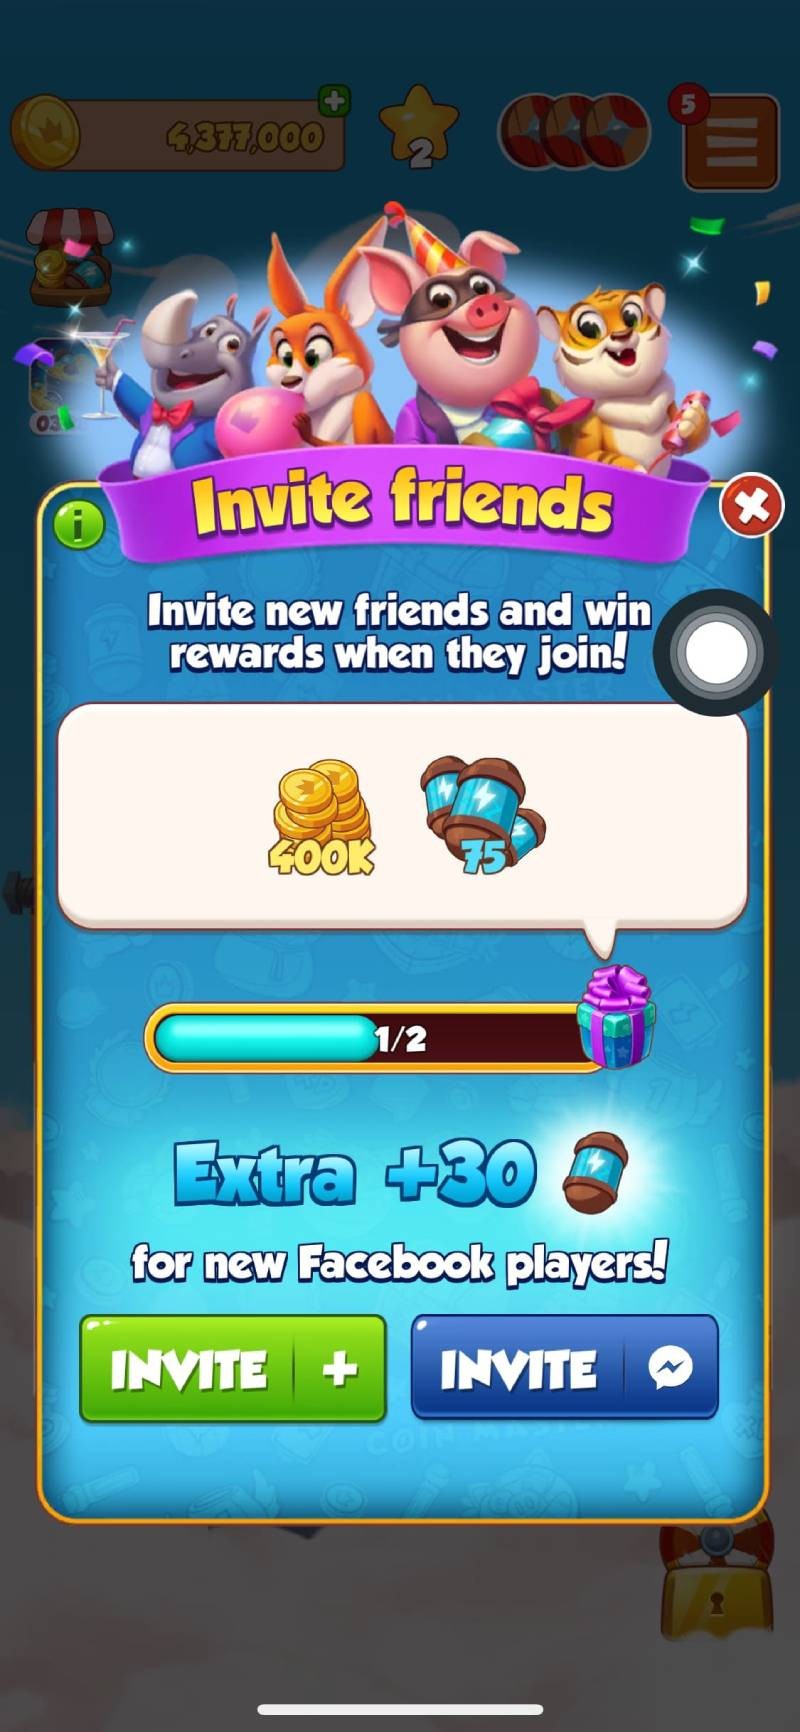 Cách mời bạn bè chơi Coin Master bằng Facebook để nhận thêm lượt Spins